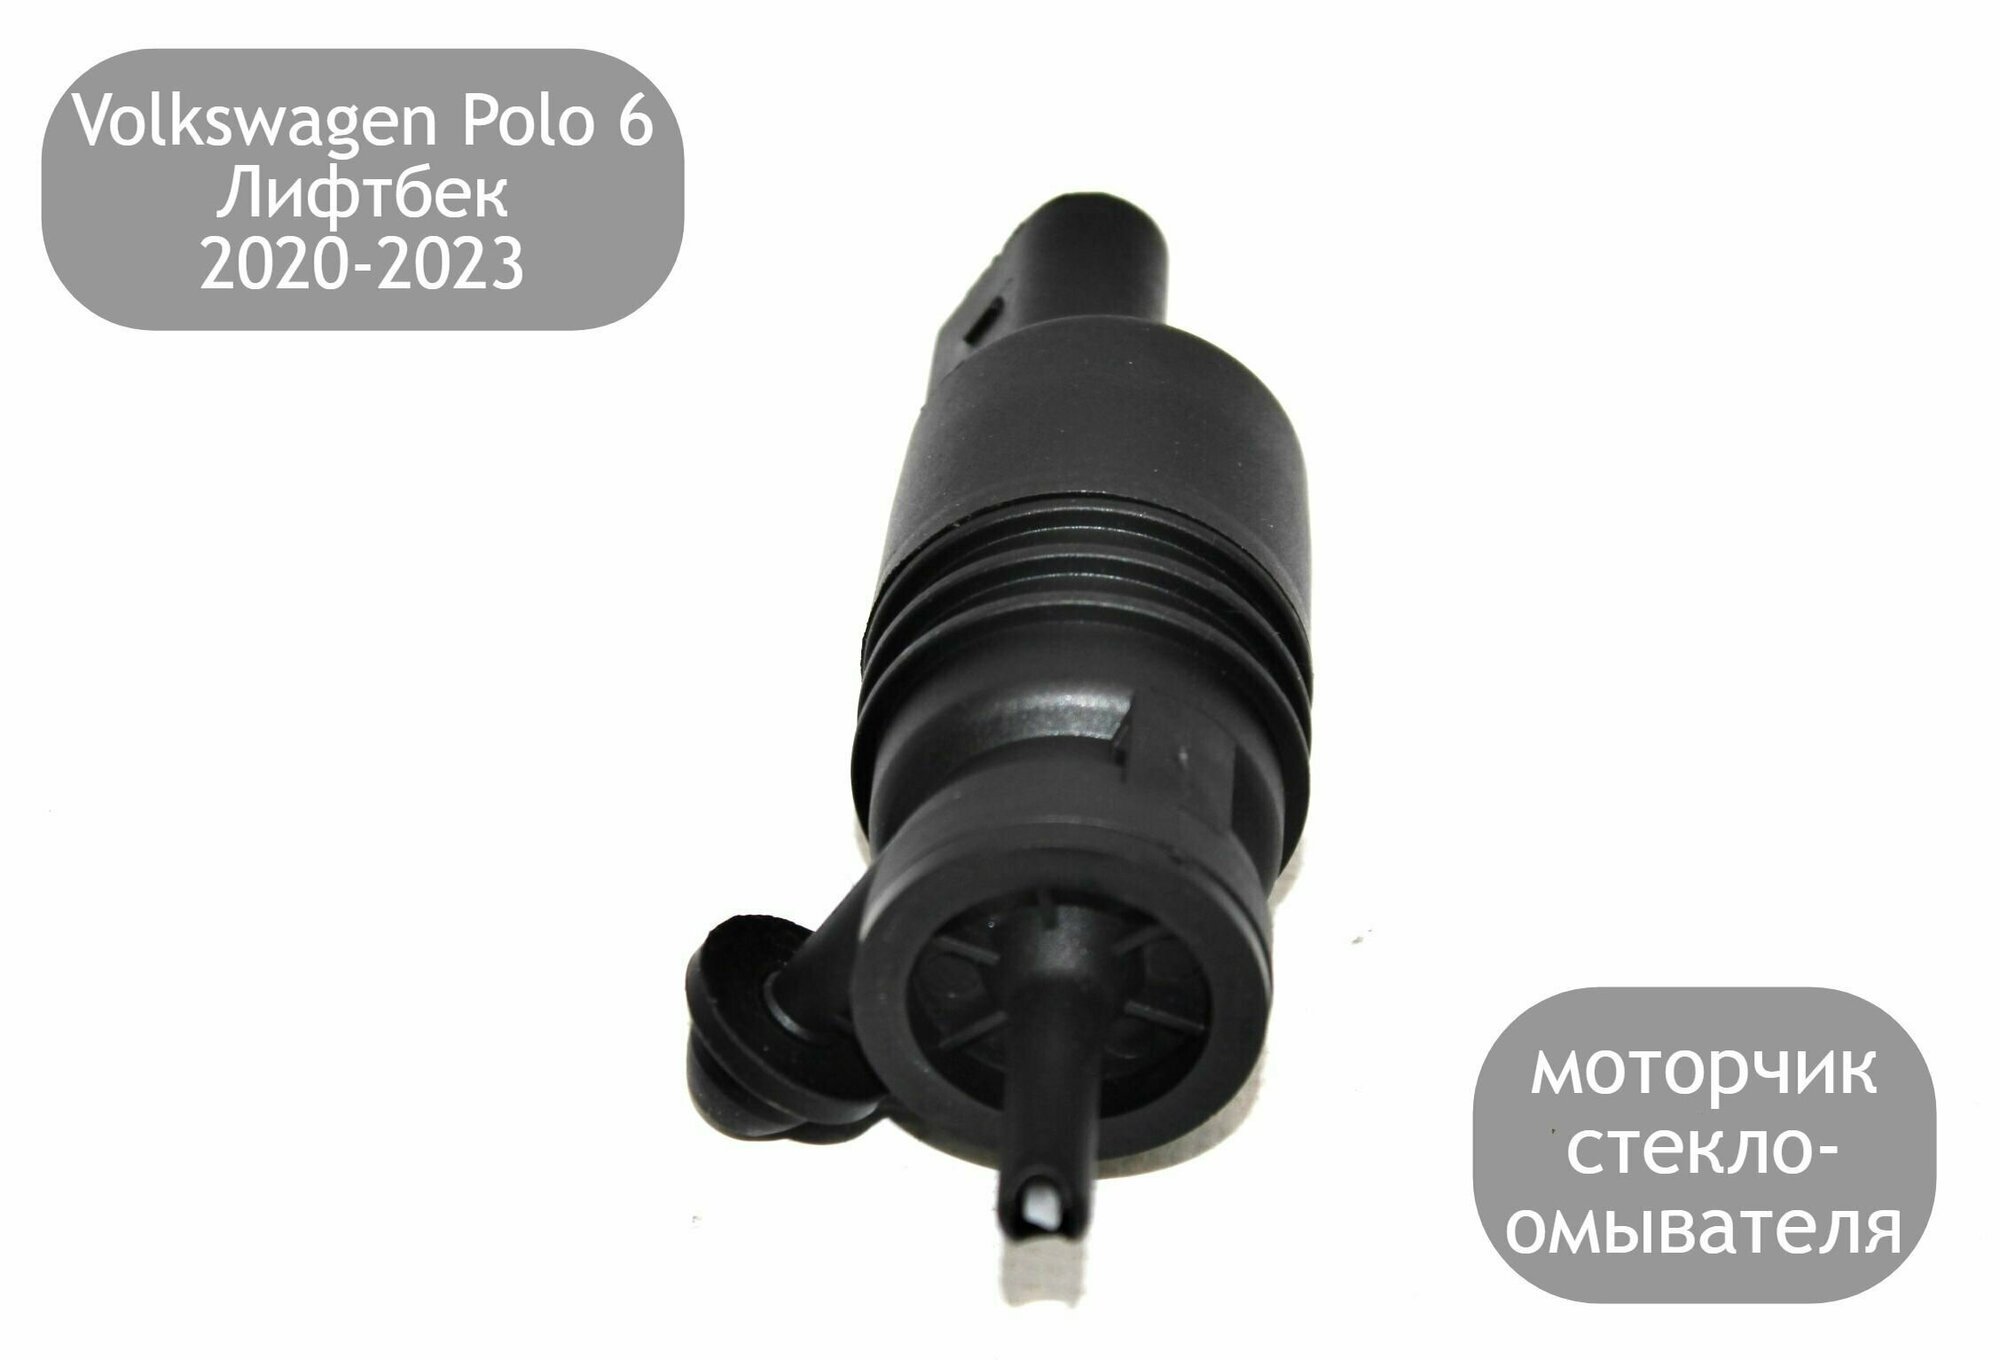 Моторчик стеклоомывателя лобового стекла для Volkswagen Polo 6 Лифтбек 2020-2023